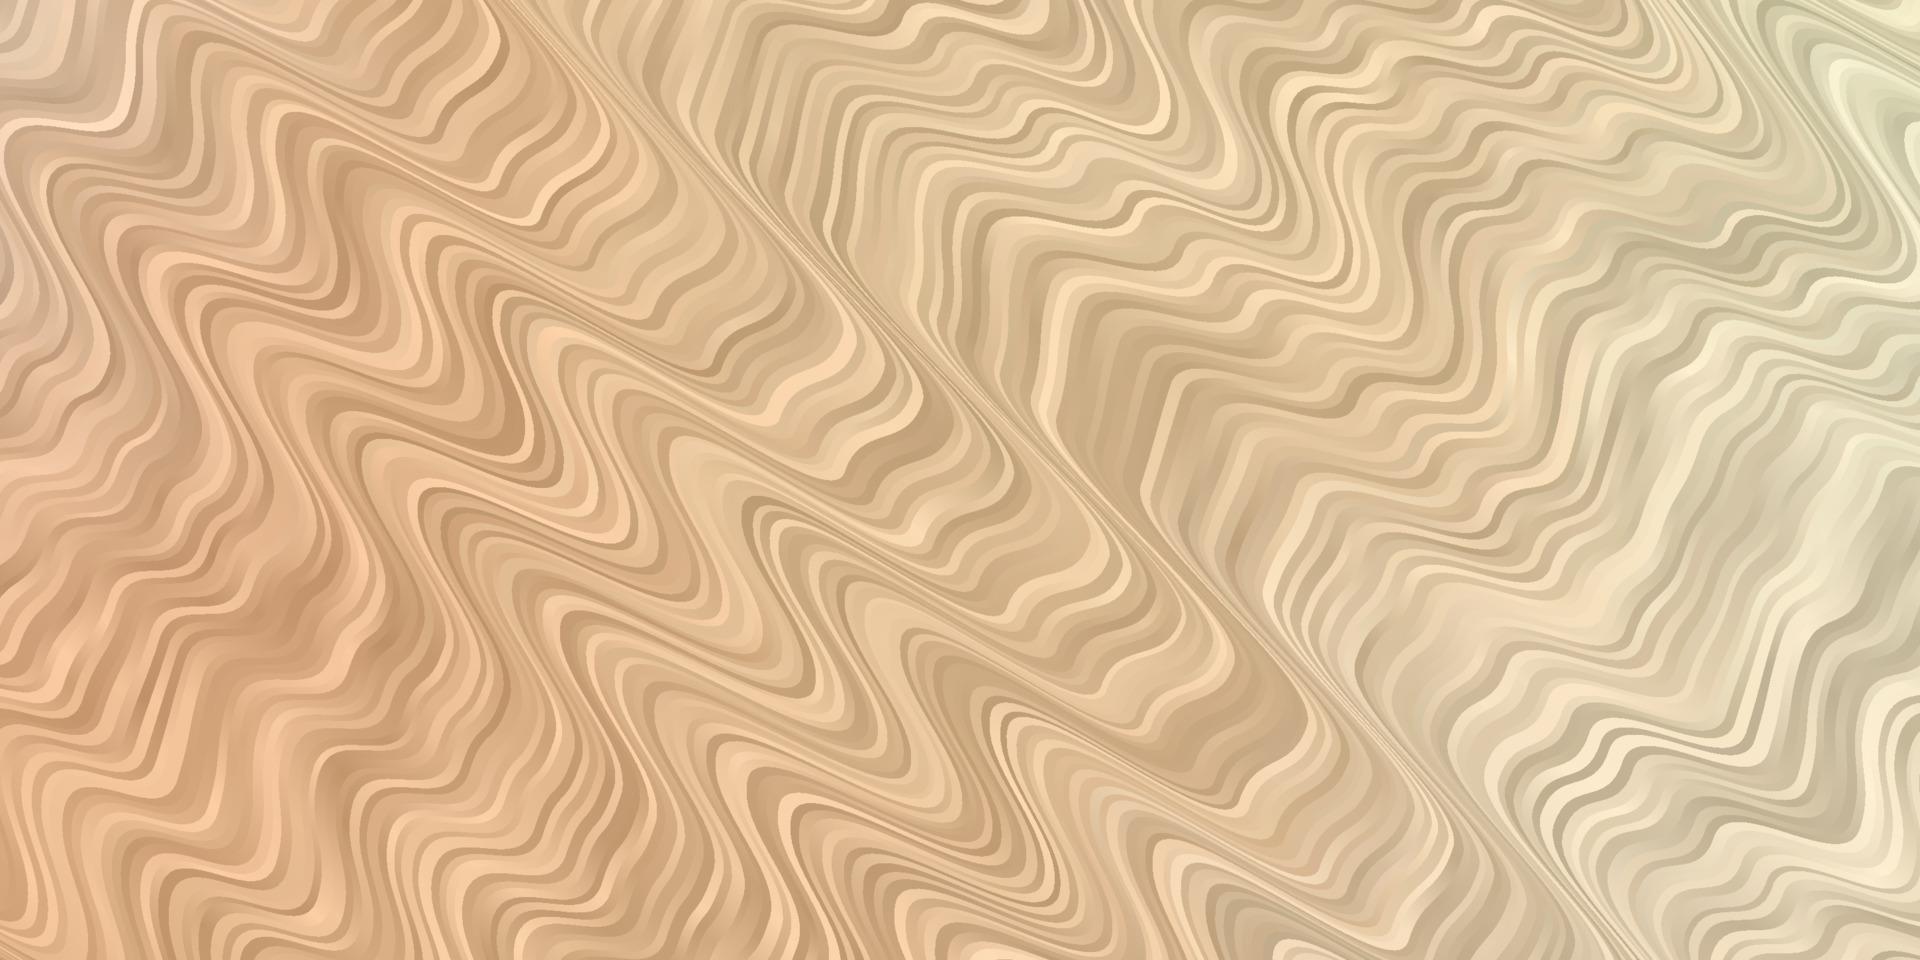 textura de vector naranja claro con arco circular.